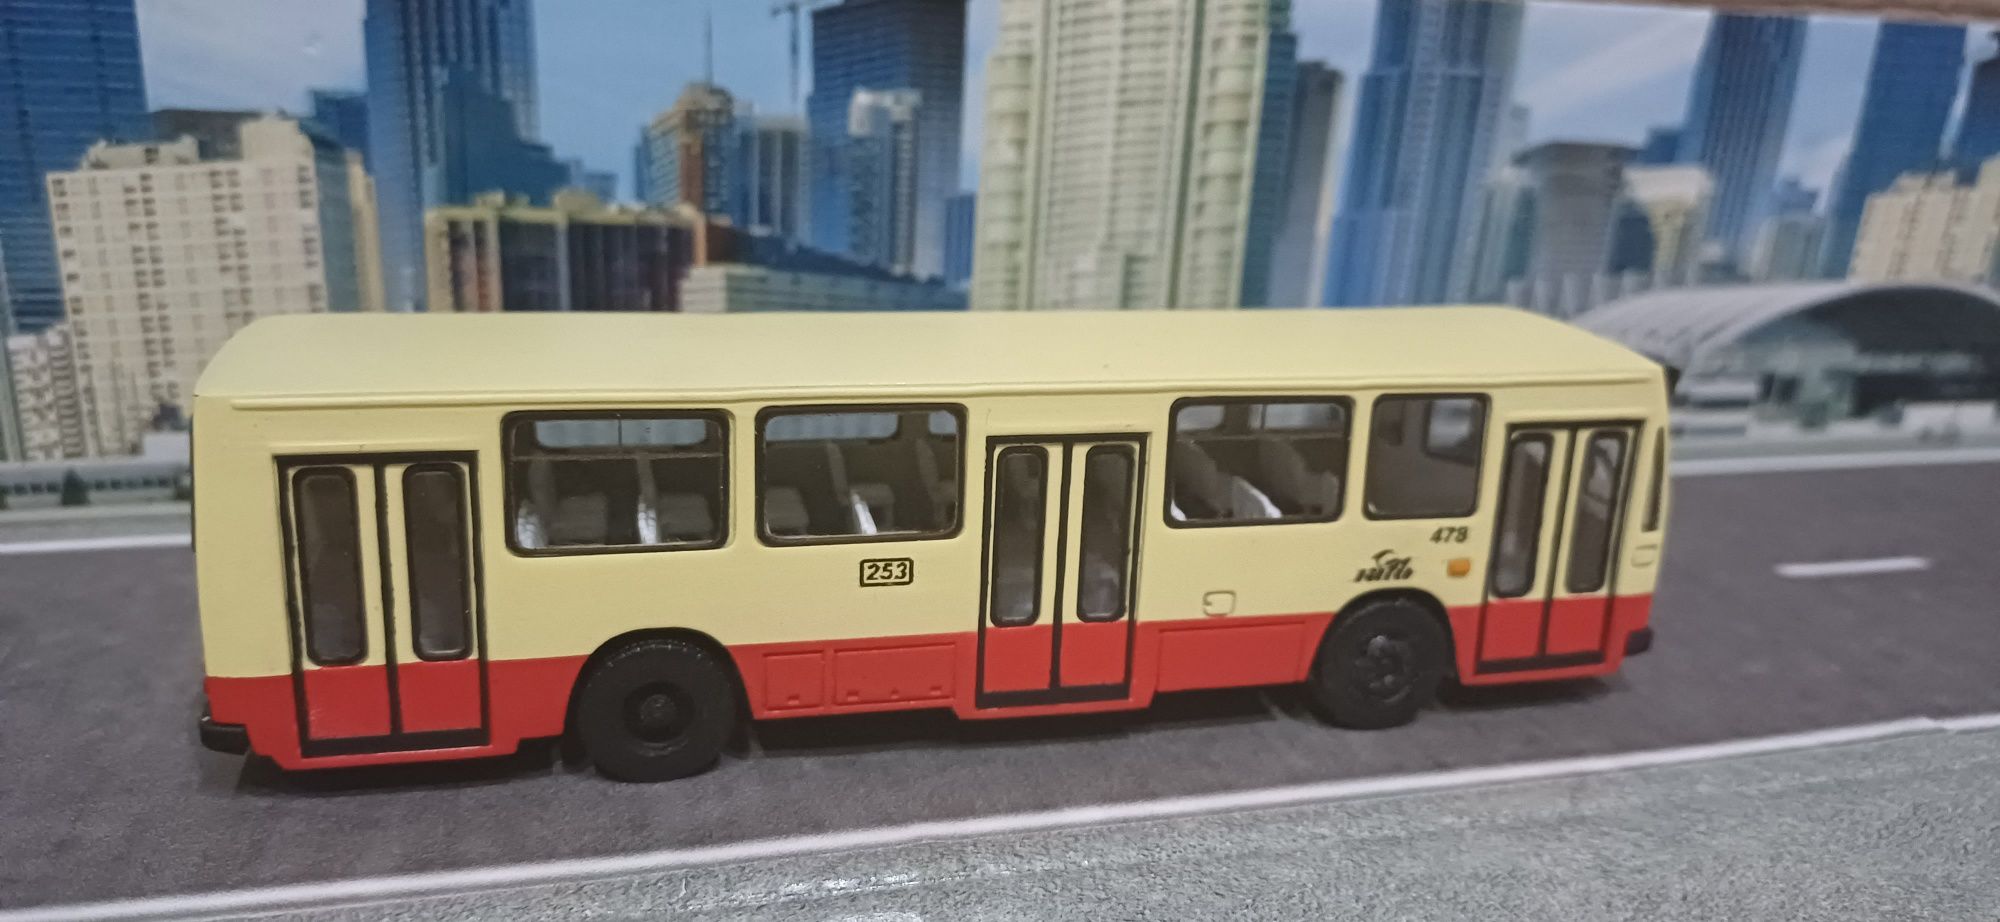 Macheta Autobuz Dac112 scara 1.87